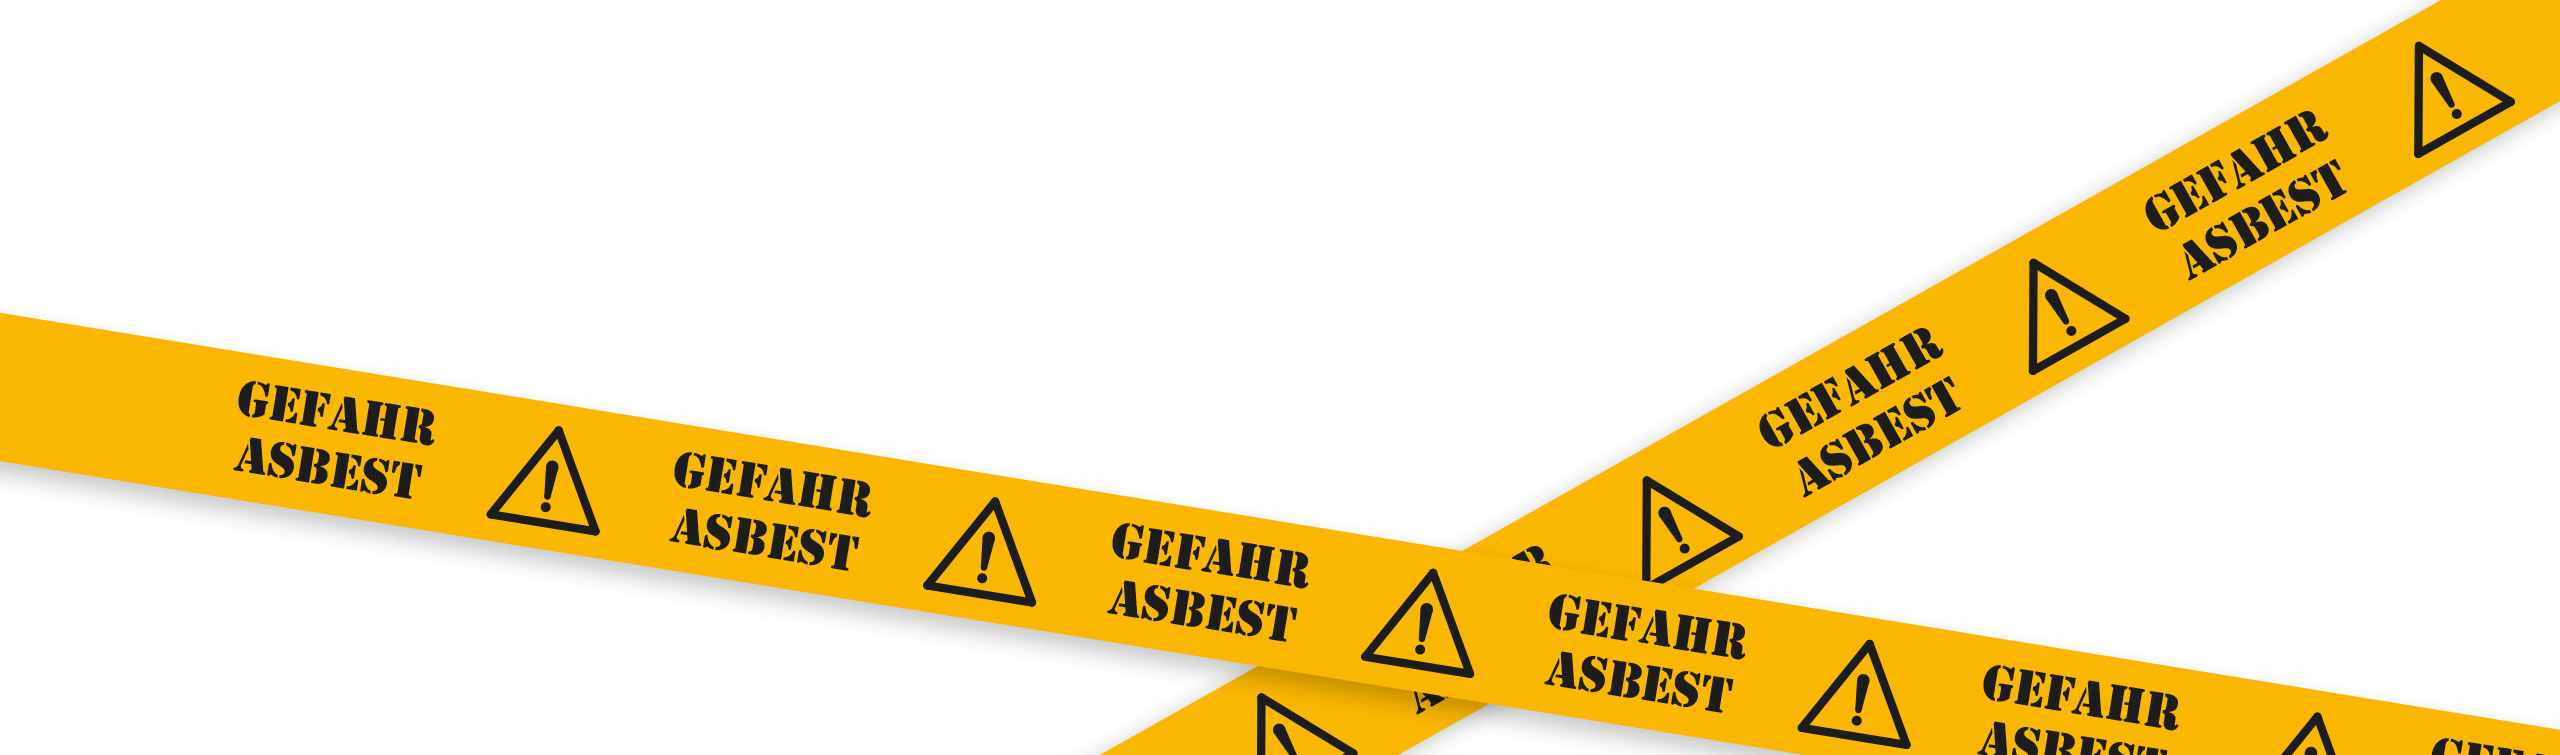 Erste Asbestbehandlungsanlage in der Schweiz